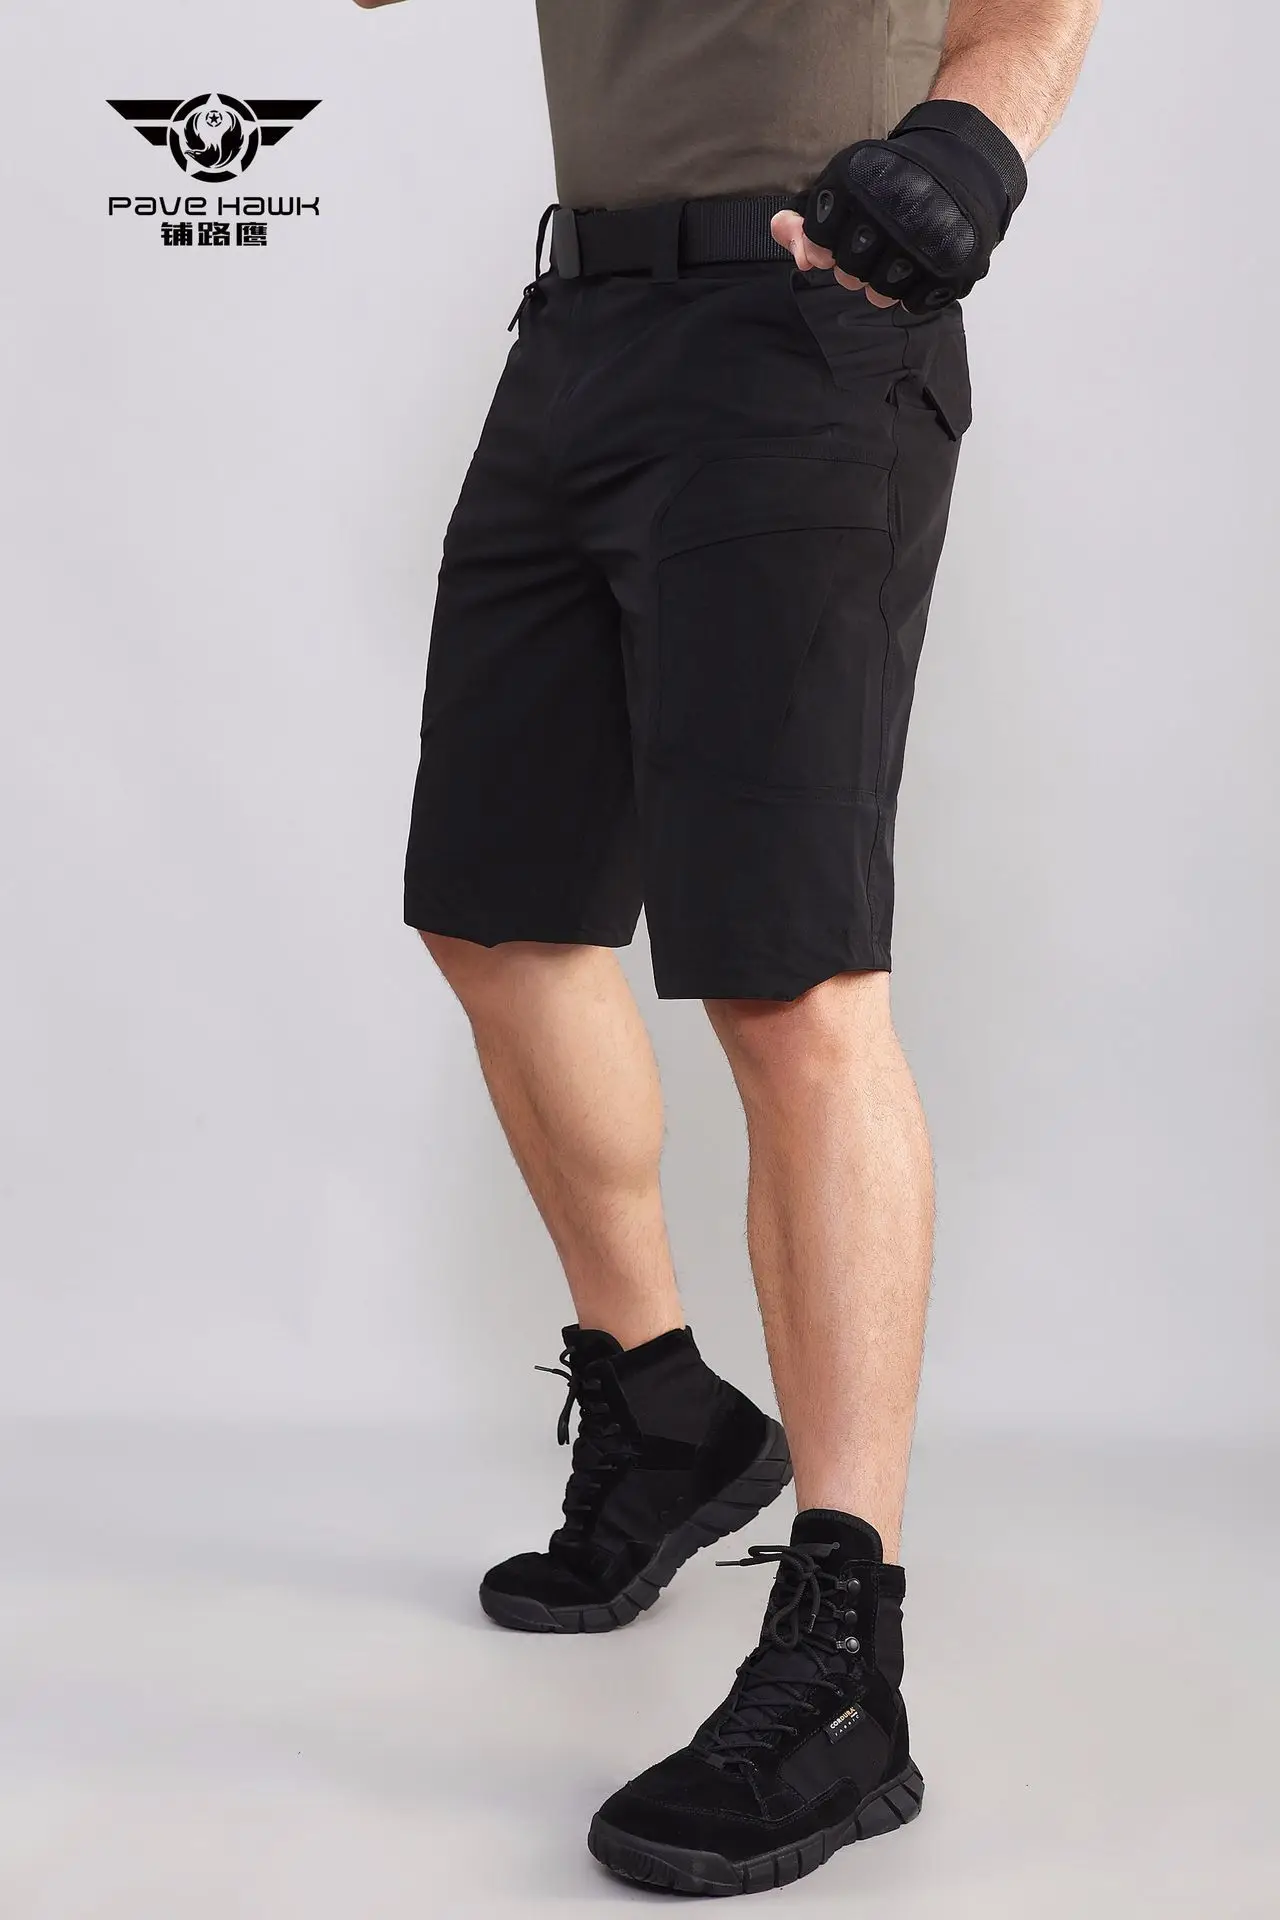 Мульти карманные летние быстросохнущие тактические шорты для мужчин походные тренировочные шорты милитари спортивные водонепроницаемые короткие брюки